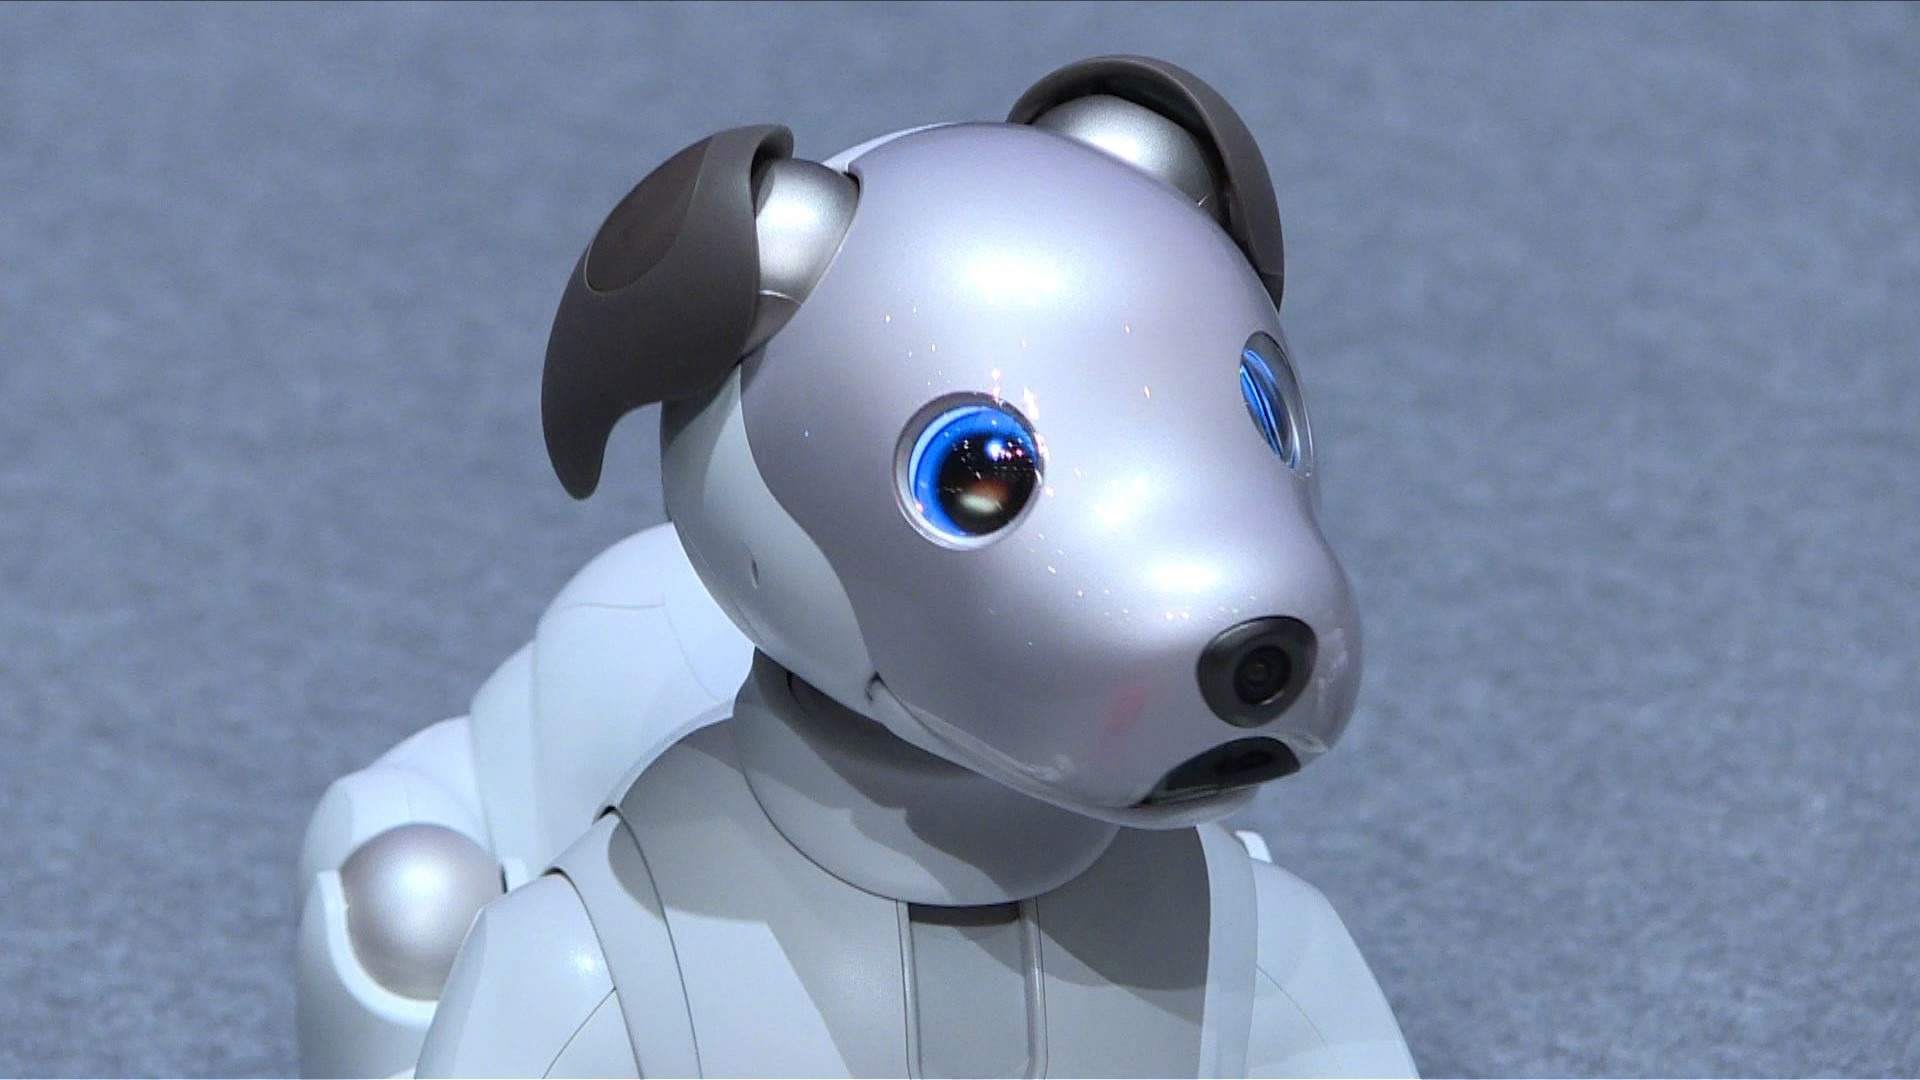 Evcil Robot gerçek oldu! On binlerce kedi, kuş, köpek robot üretildi!